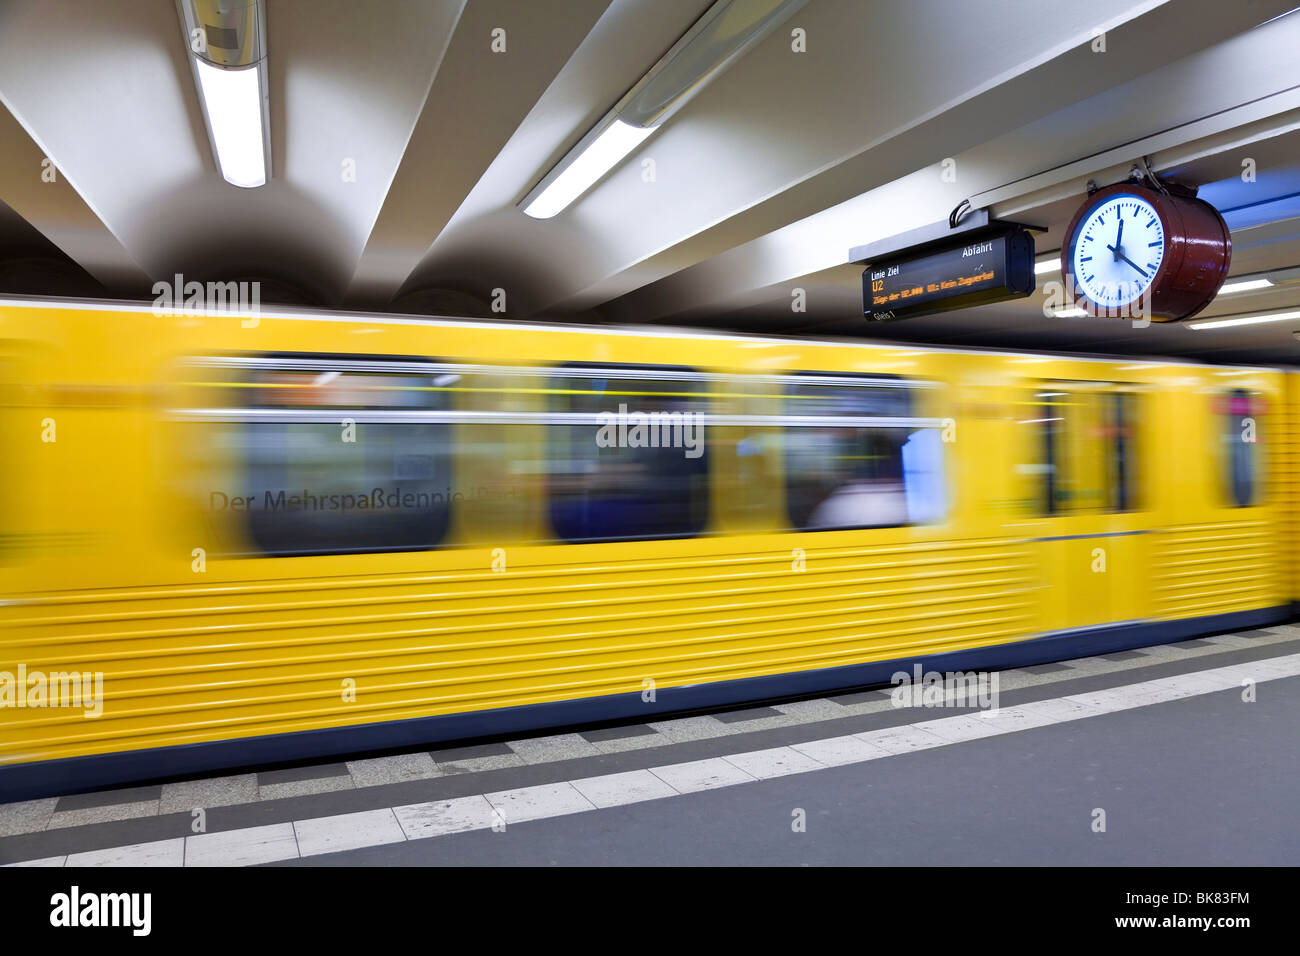 Europa, Deutschland, Berlin, moderne u-Bahn - Zug in den Bahnhof Ziehen verschieben Stockfoto